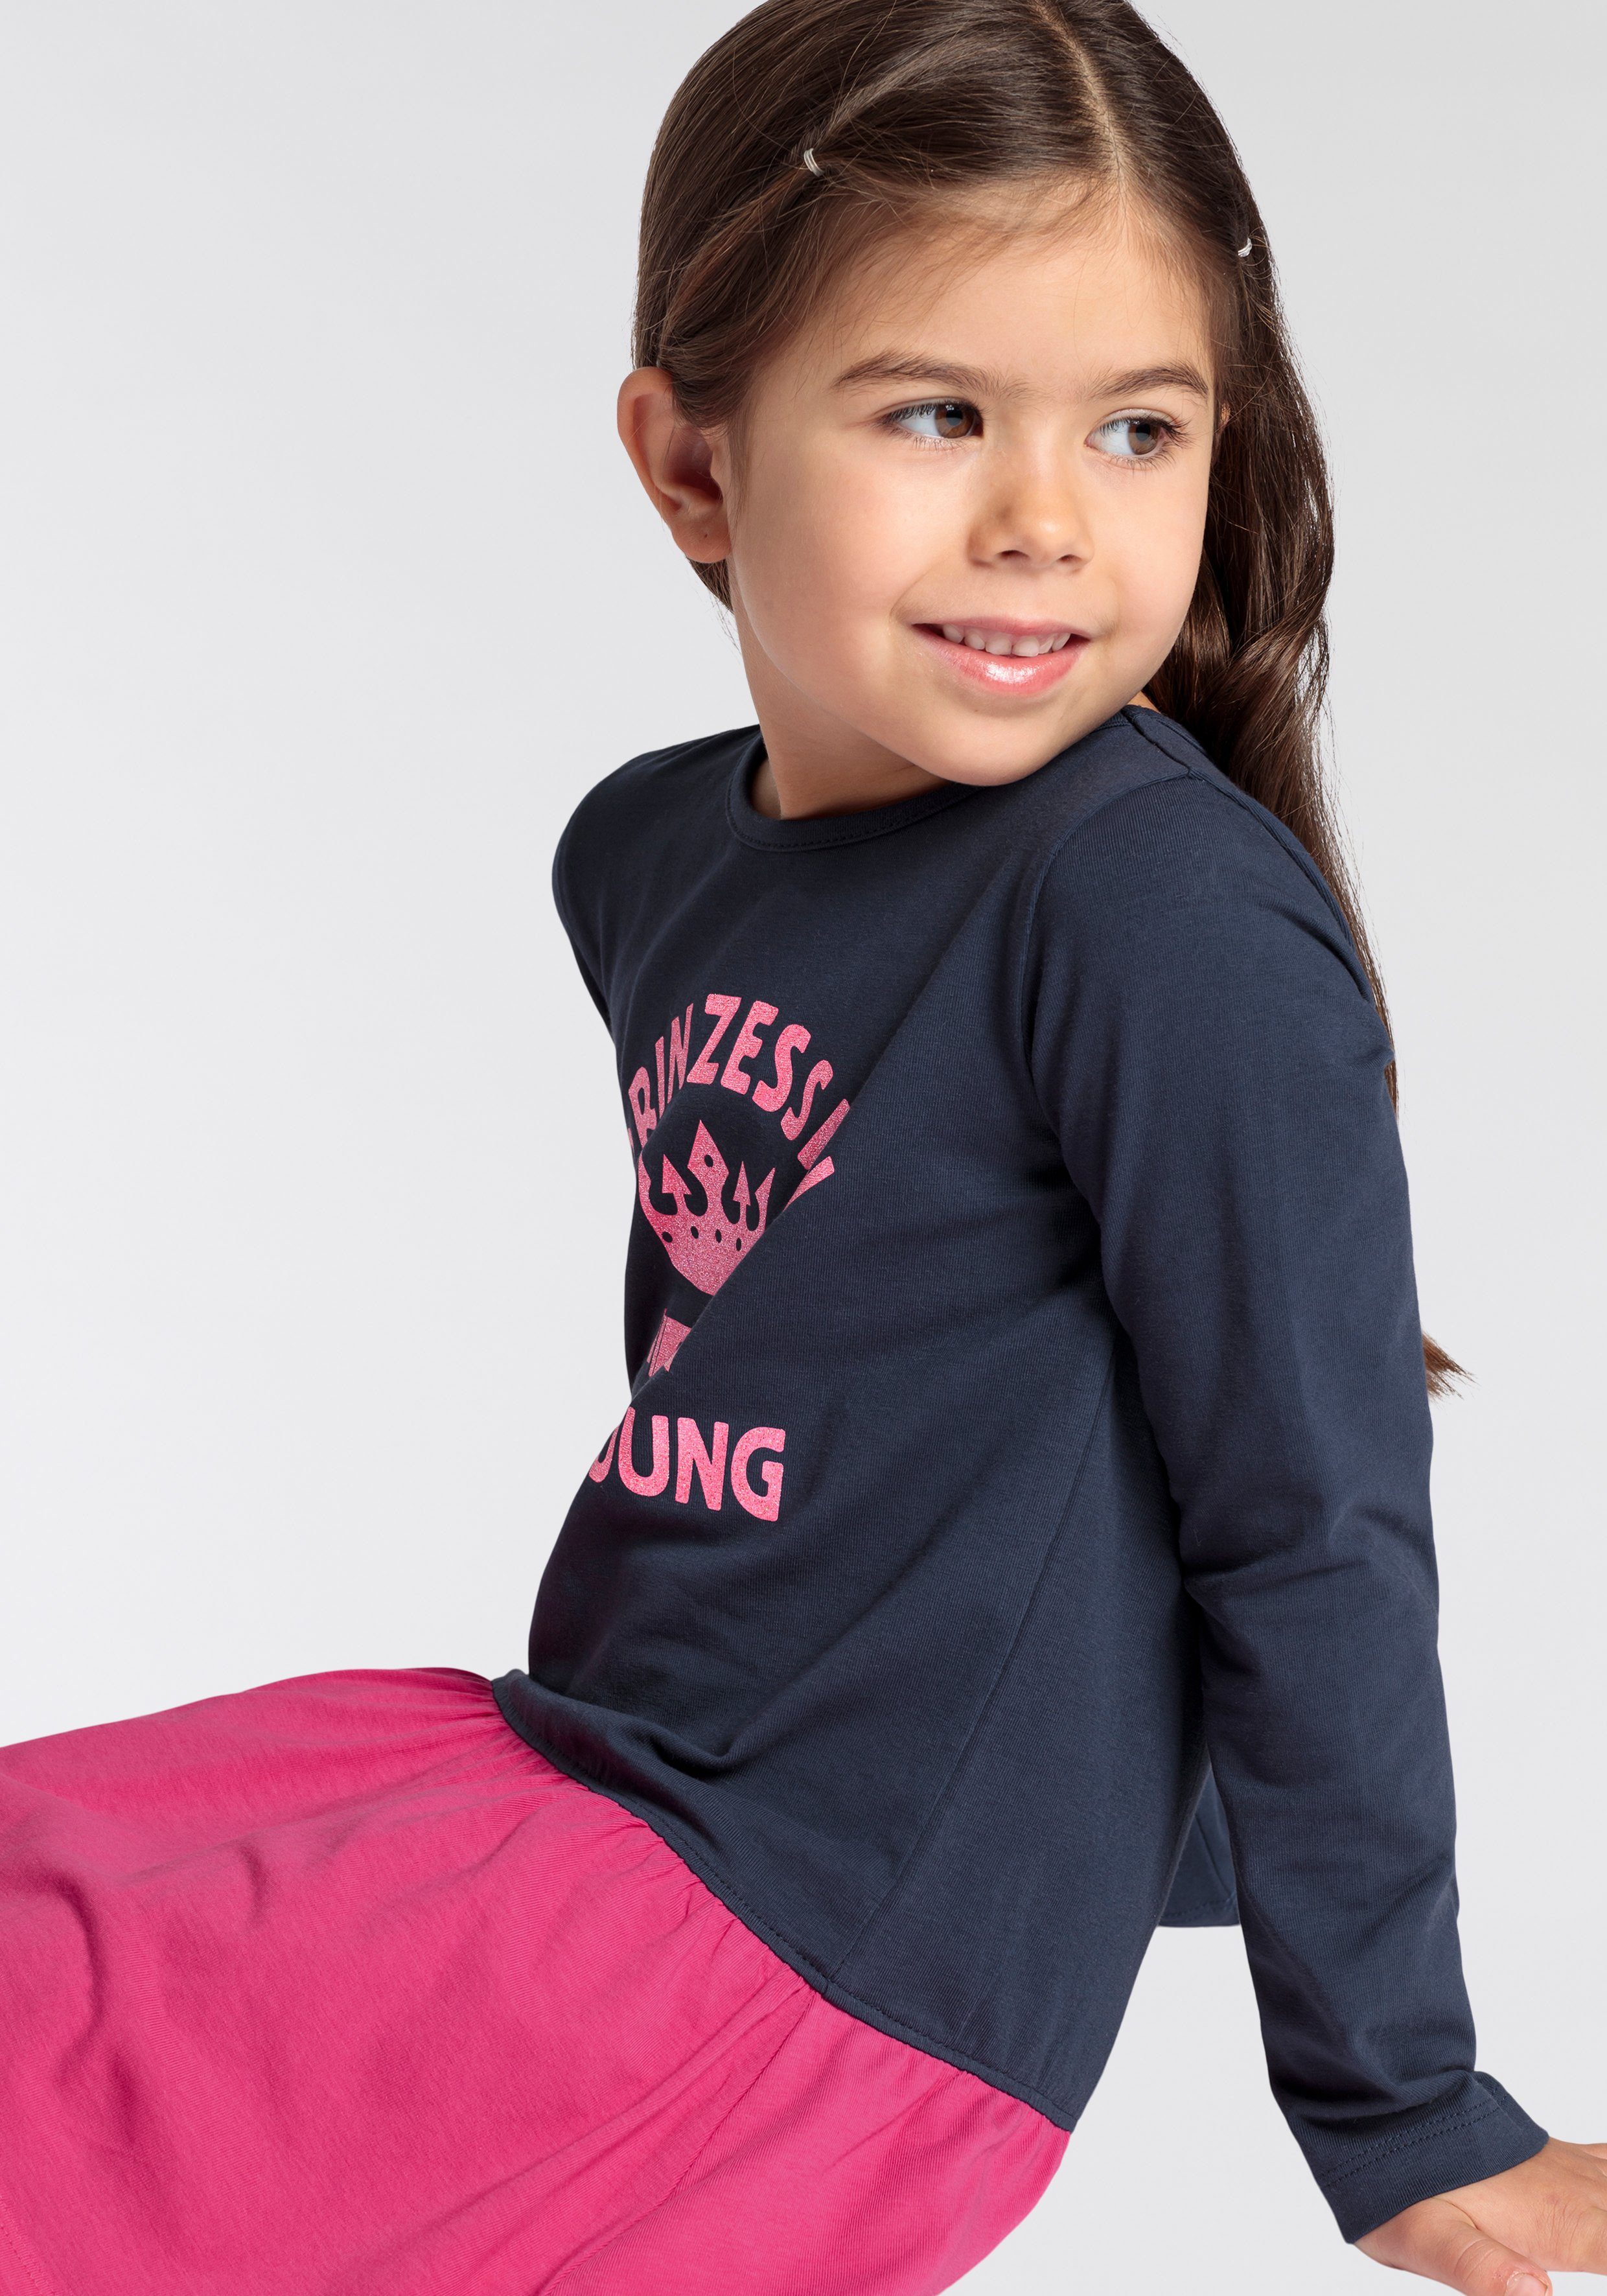 KIDSWORLD Jerseykleid PRINZESSIN IN AUSBILDUNG, Sprüchedruck für Mädchen kleine